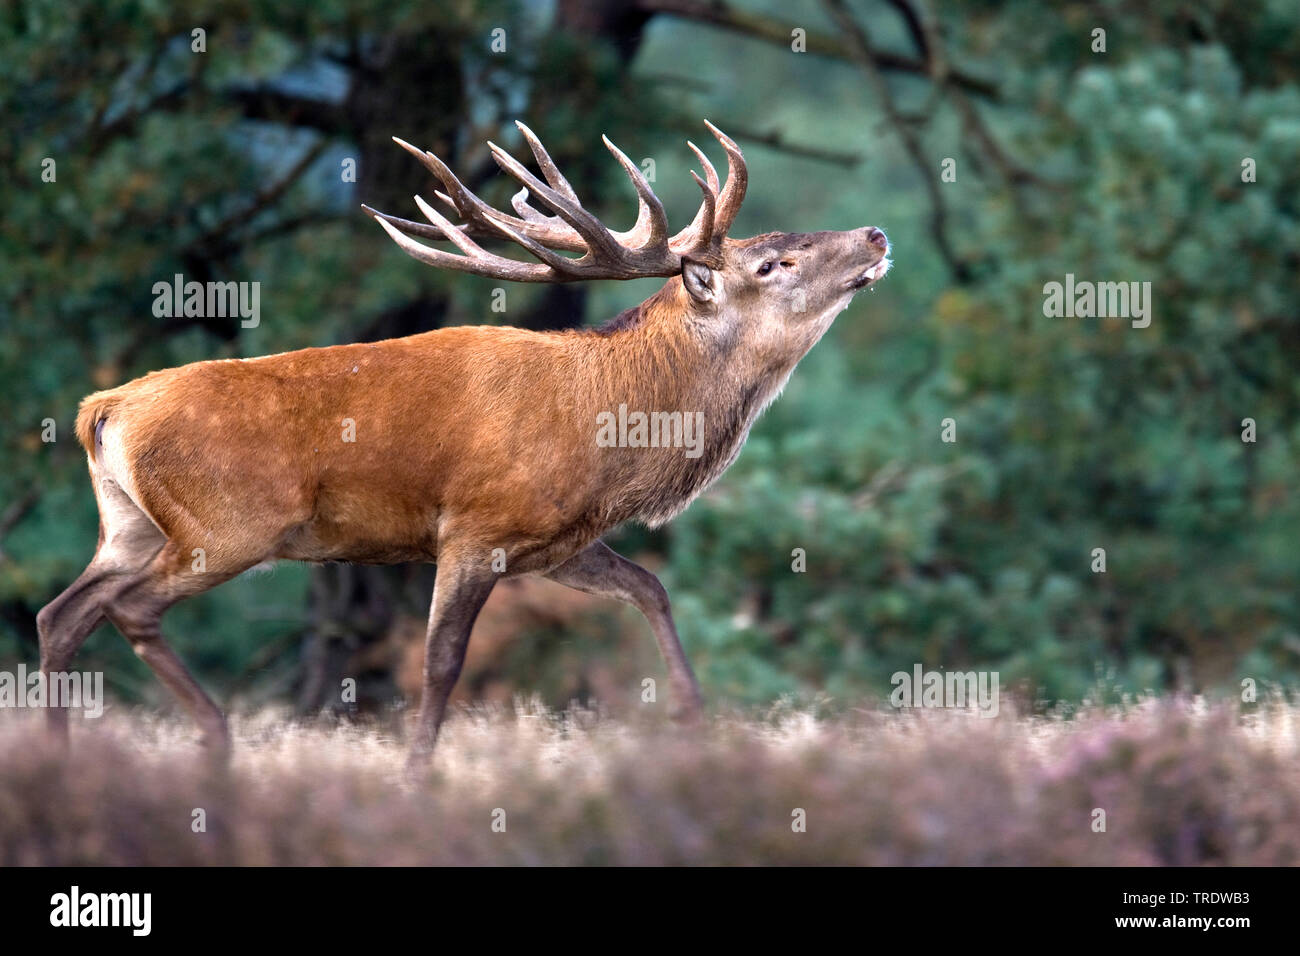 red deer (Cervus elaphus), barking, Netherlands Stock Photo